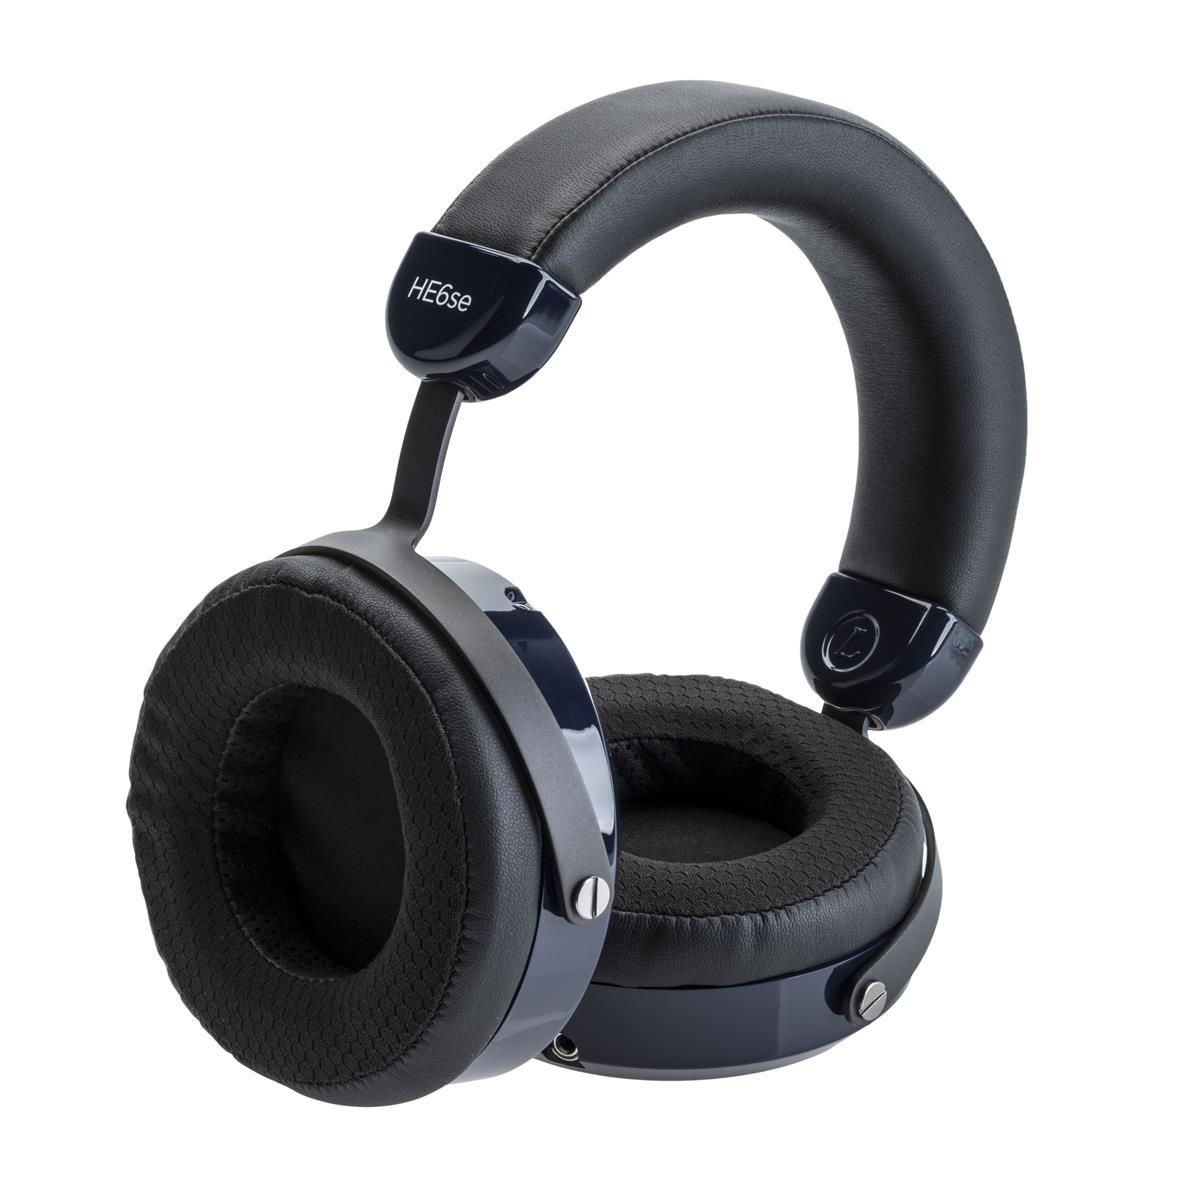 HiFiMan HE6se V2 Over Ear Planar Magnetic Headphones